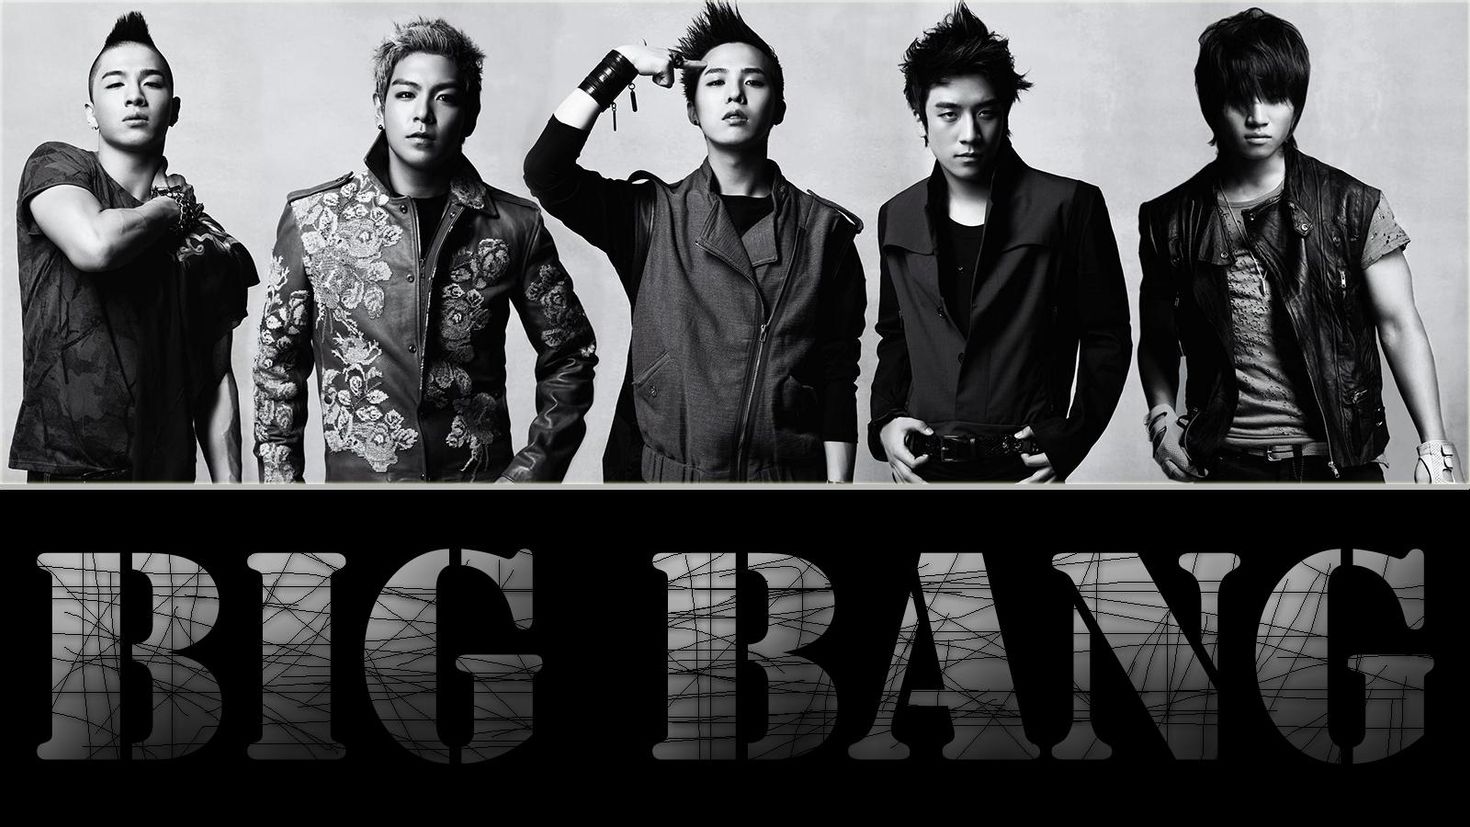 Big bang онлайне. Биг бэнг группа. Бигбенг кпоп. Биг бенг корейская группа. BIGBANG 4.4.